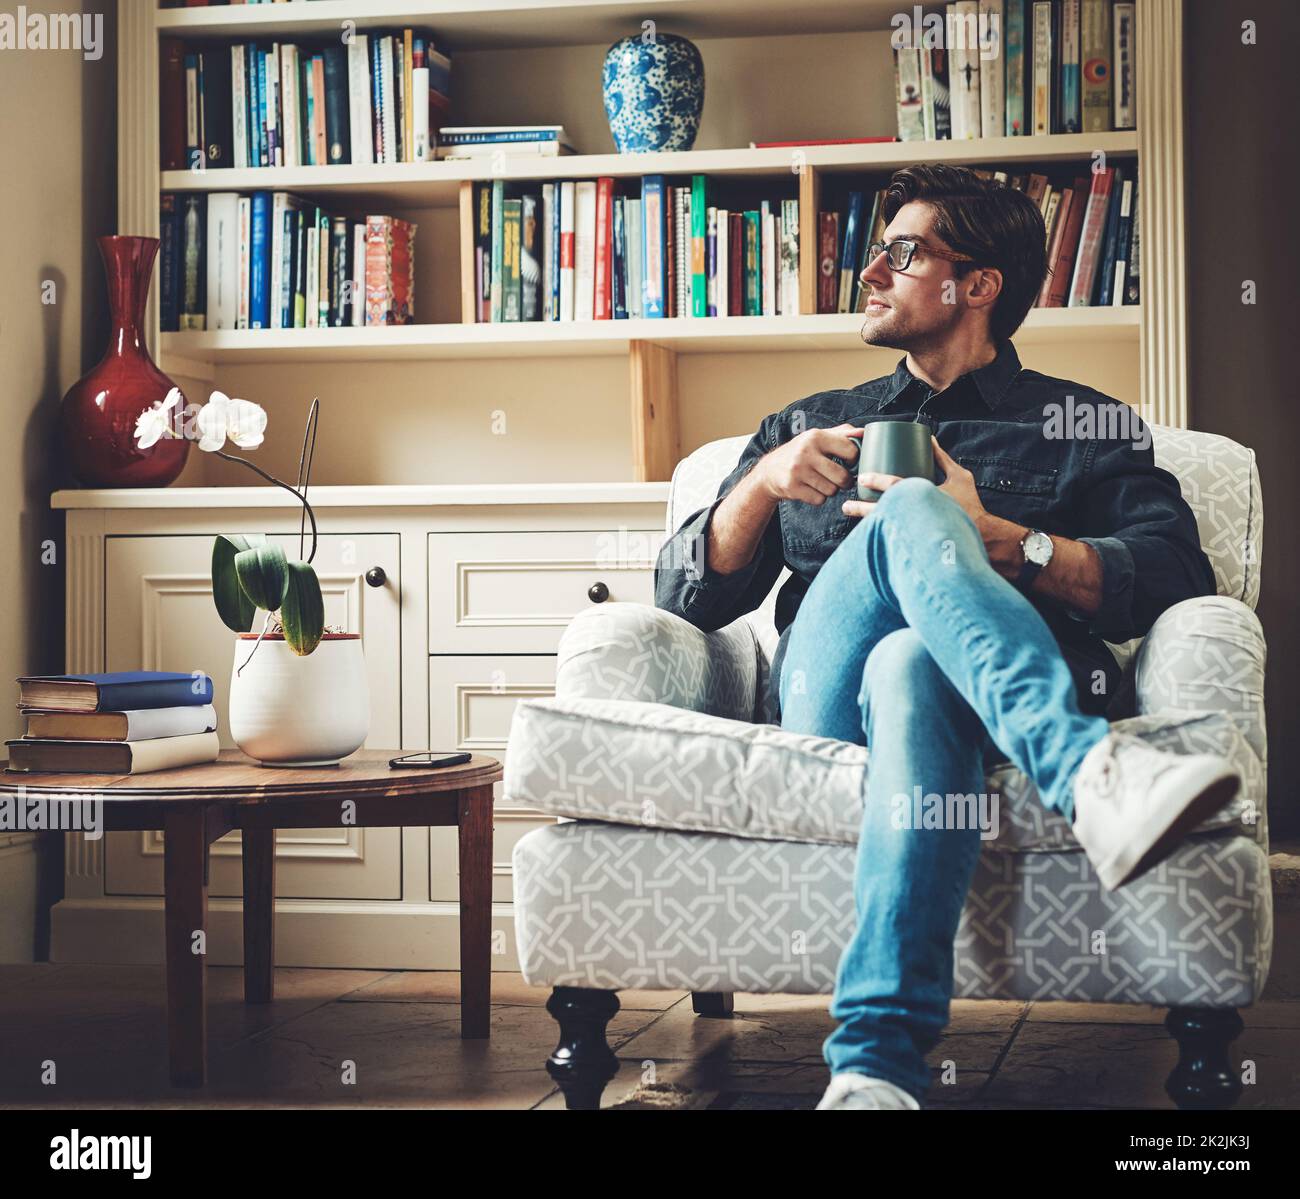 Neue Möglichkeiten ergeben sich jeden neuen Tag. Aufnahme eines hübschen jungen Geschäftsmannes, der Kaffee trinkt, während er zu Hause auf einer Couch in seinem Büro sitzt. Stockfoto